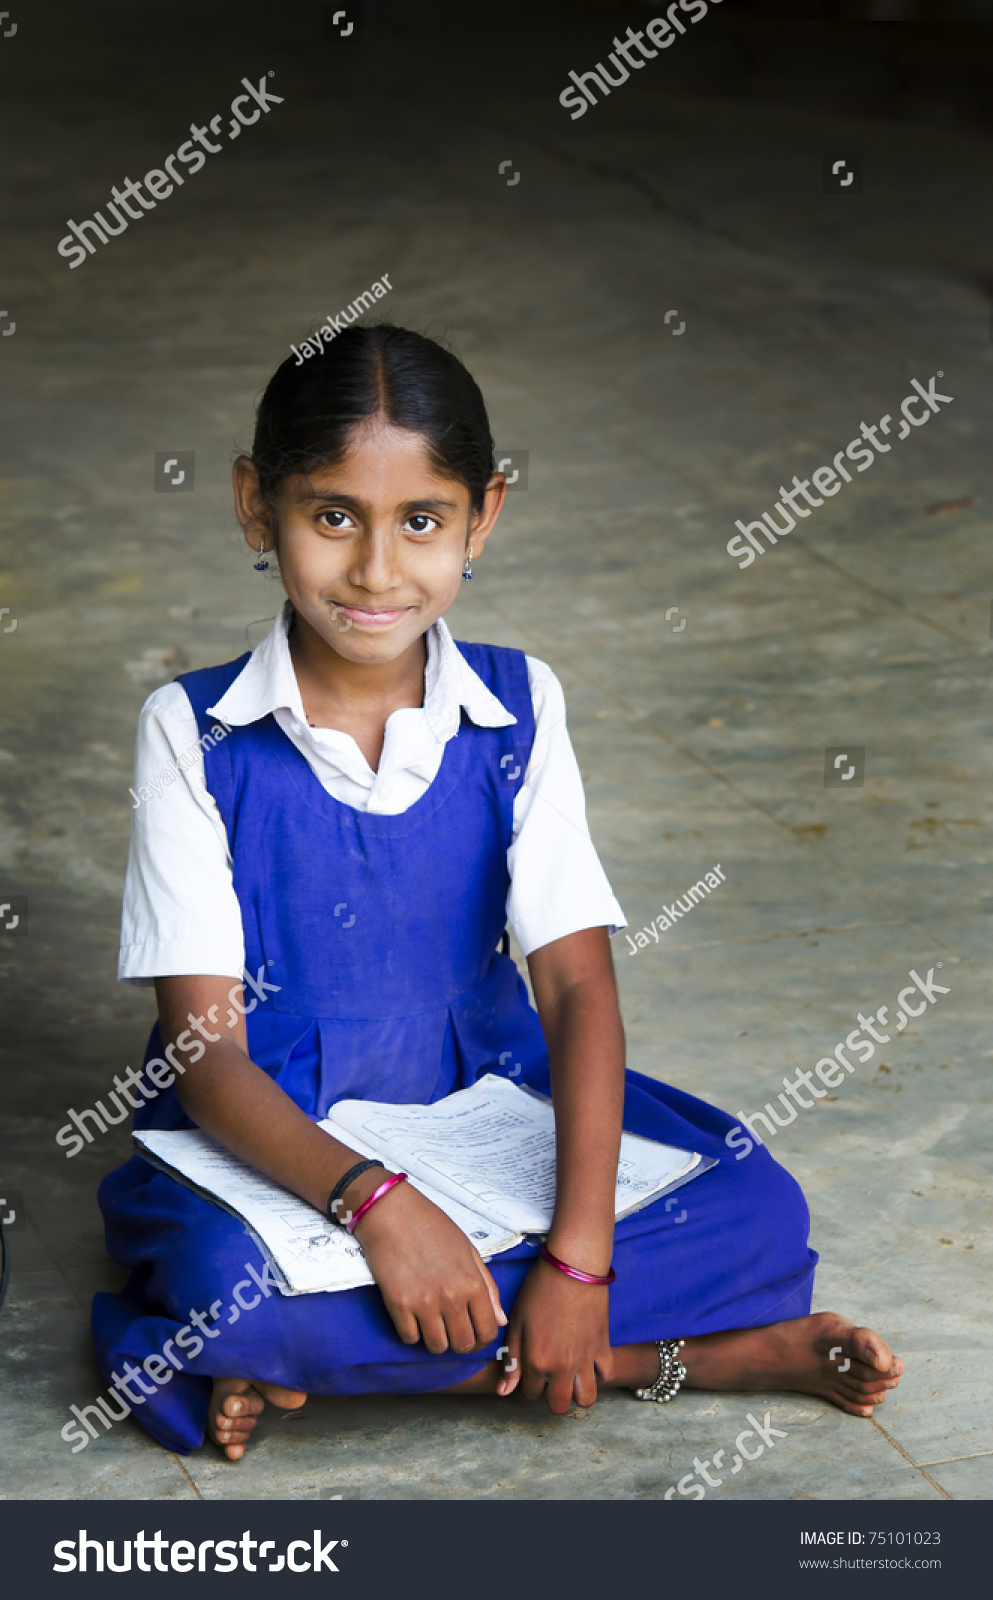 527 Imágenes De Tamil School Girls Imágenes Fotos Y Vectores De Stock Shutterstock 